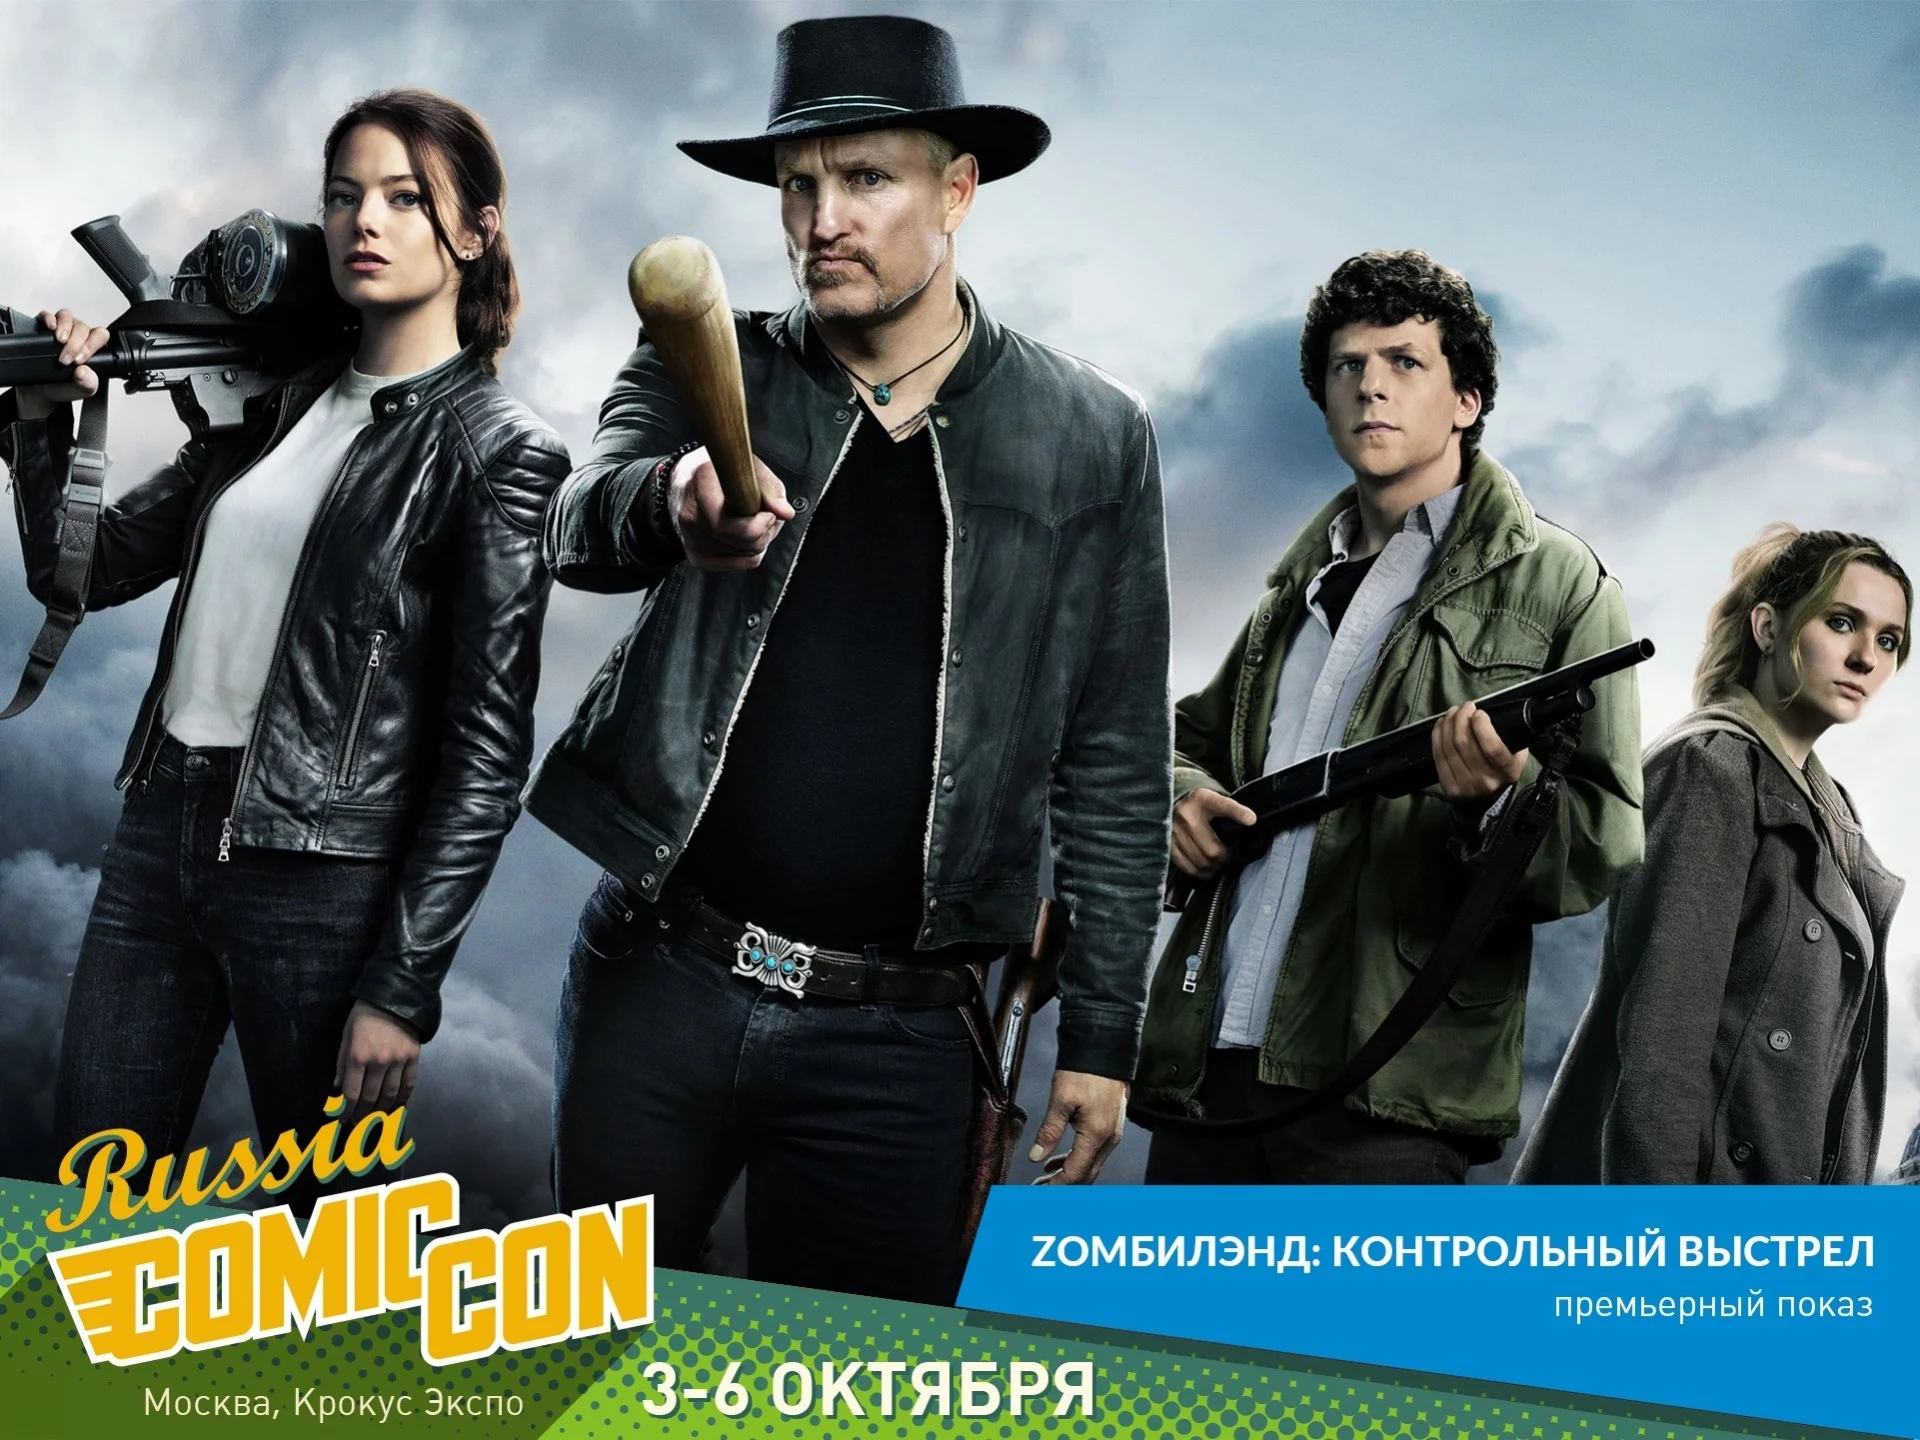 «Zомбилэнд: контрольный выстрел» покажут на Comic Con Russia 2019 - фото 1